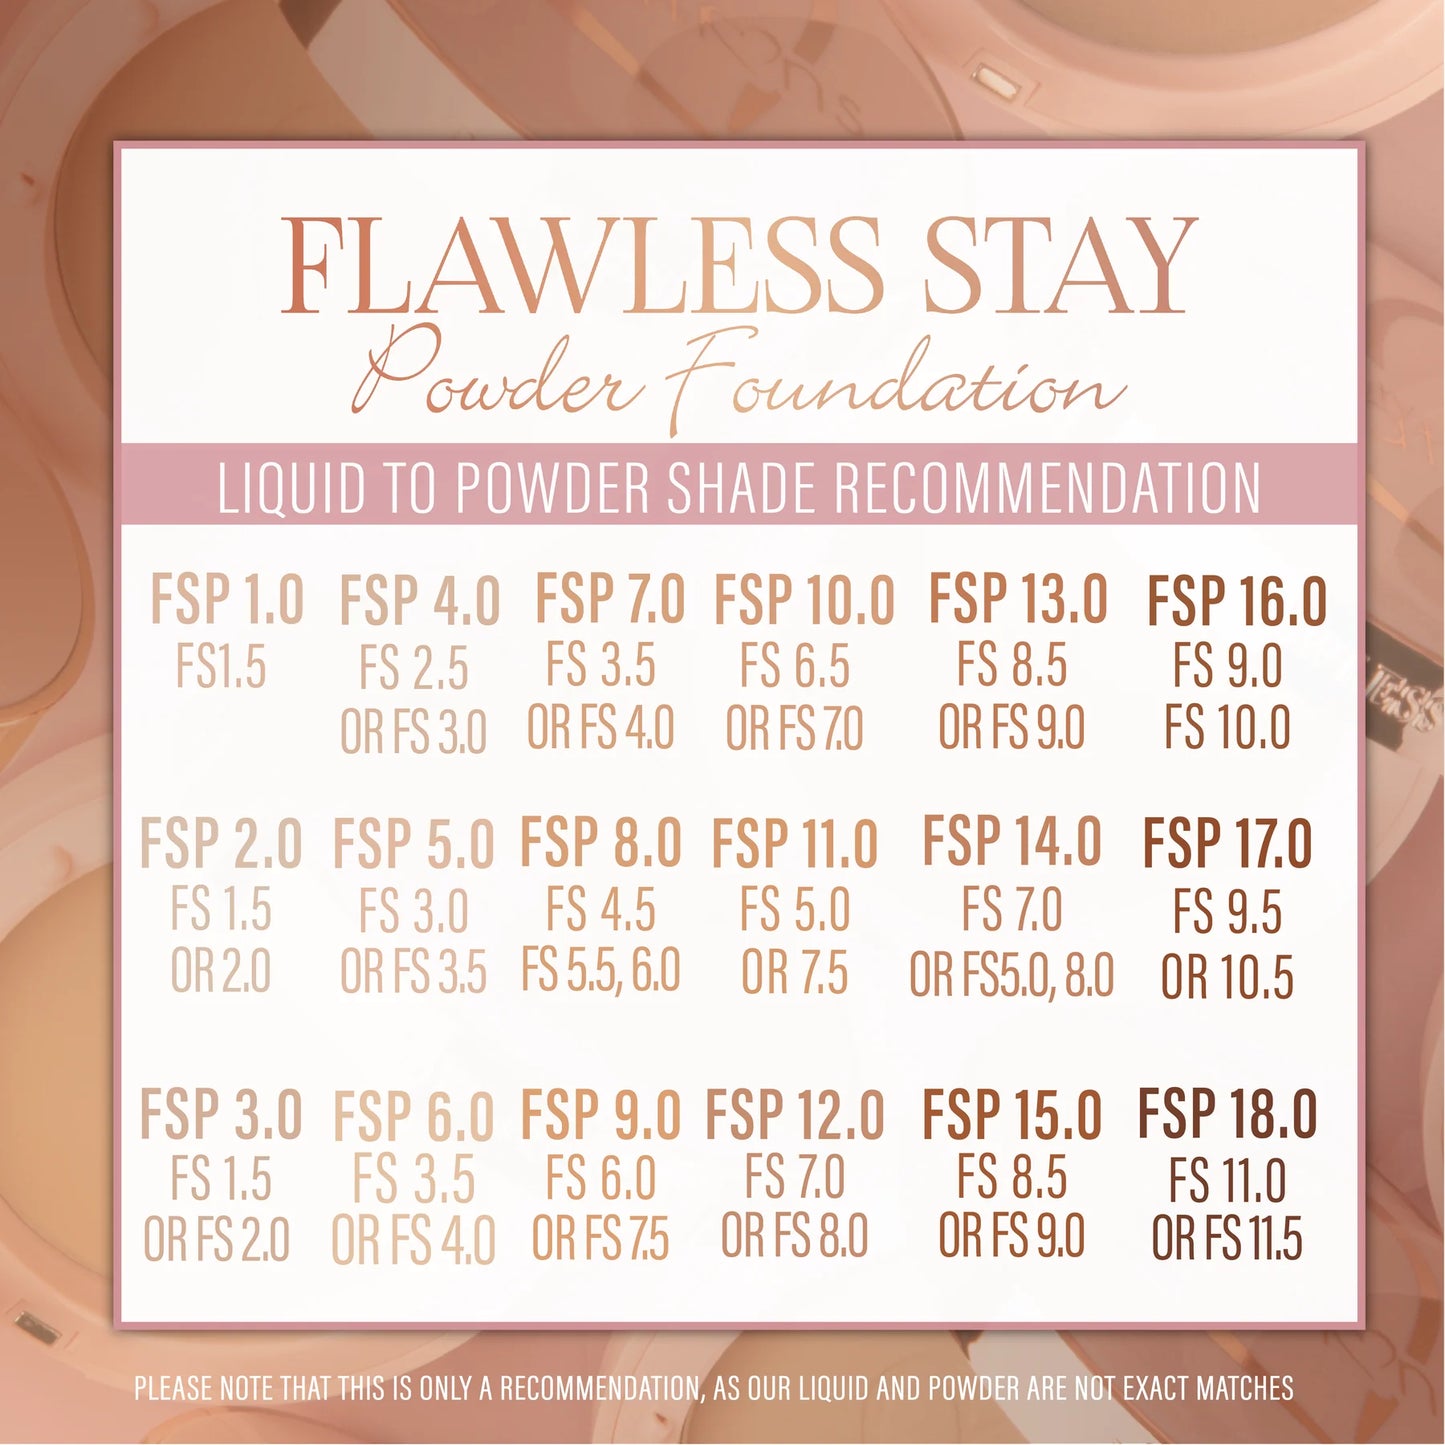 8.0 - Flawless Stay Powder Foundation